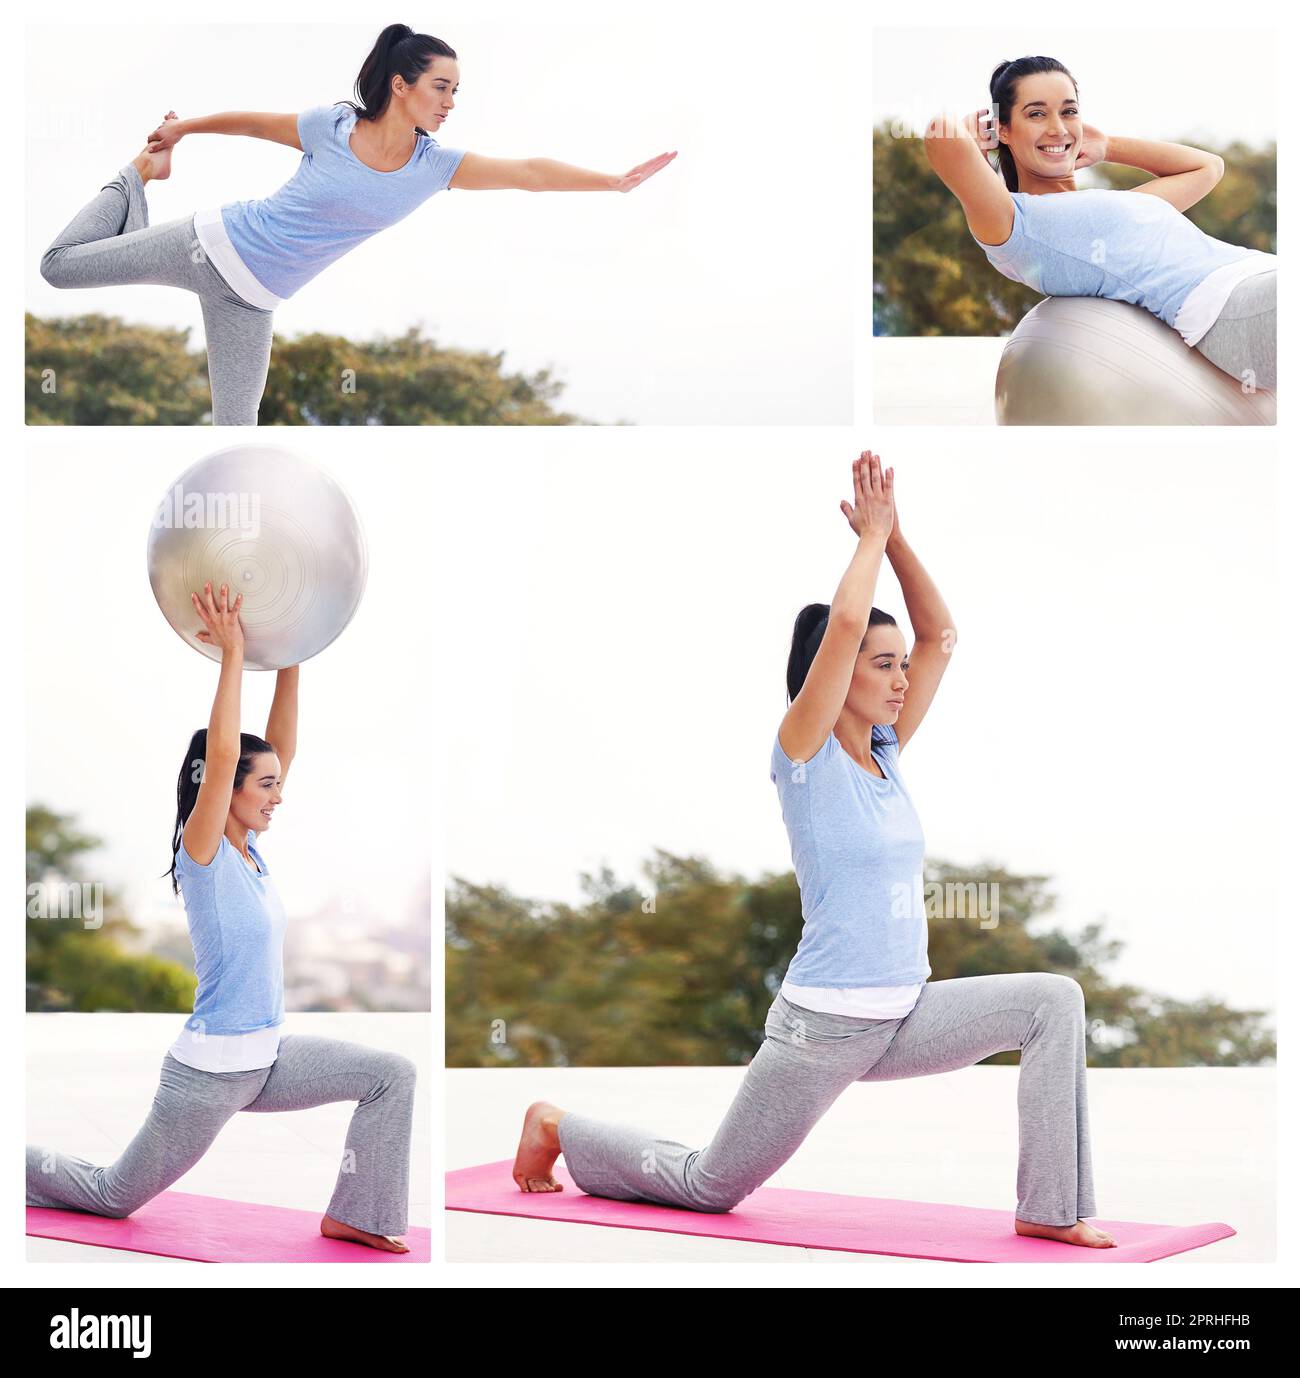 Le yoga vous permet de trouver un nouveau genre de liberté. Image composite d'une jeune femme attrayante s'exerçant à l'extérieur. Banque D'Images